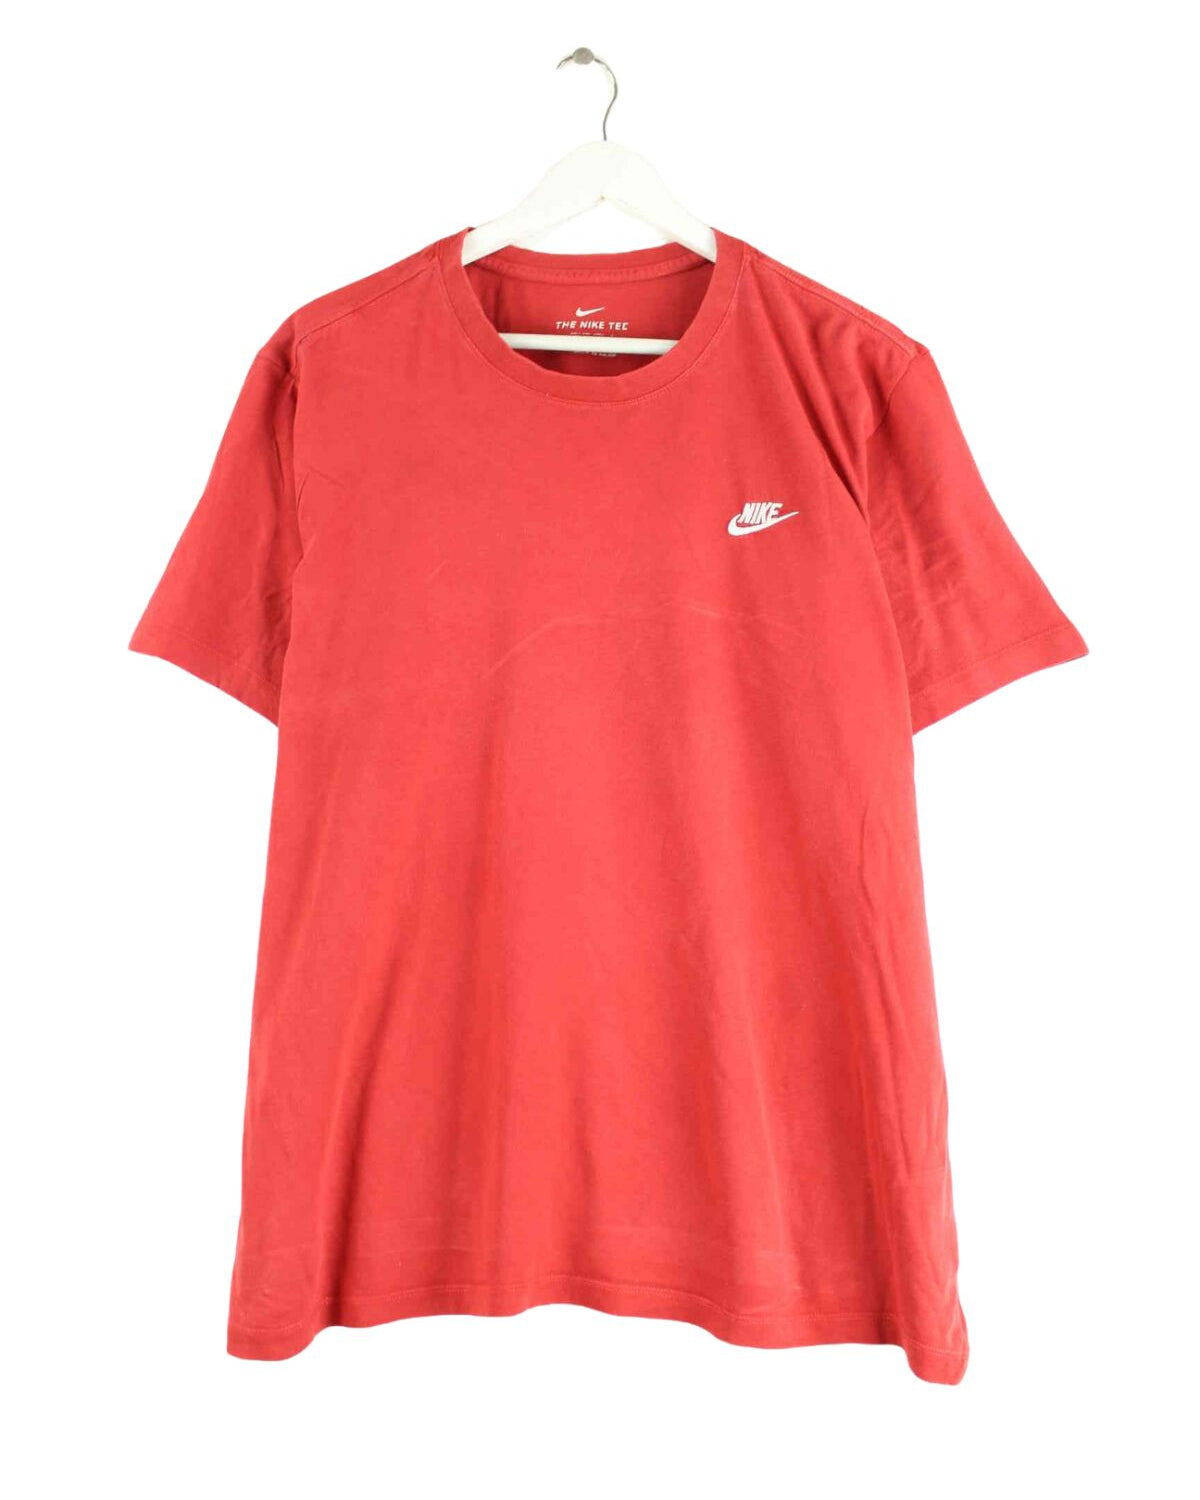 Nike Basic T-Shirt Rot XL (front image)